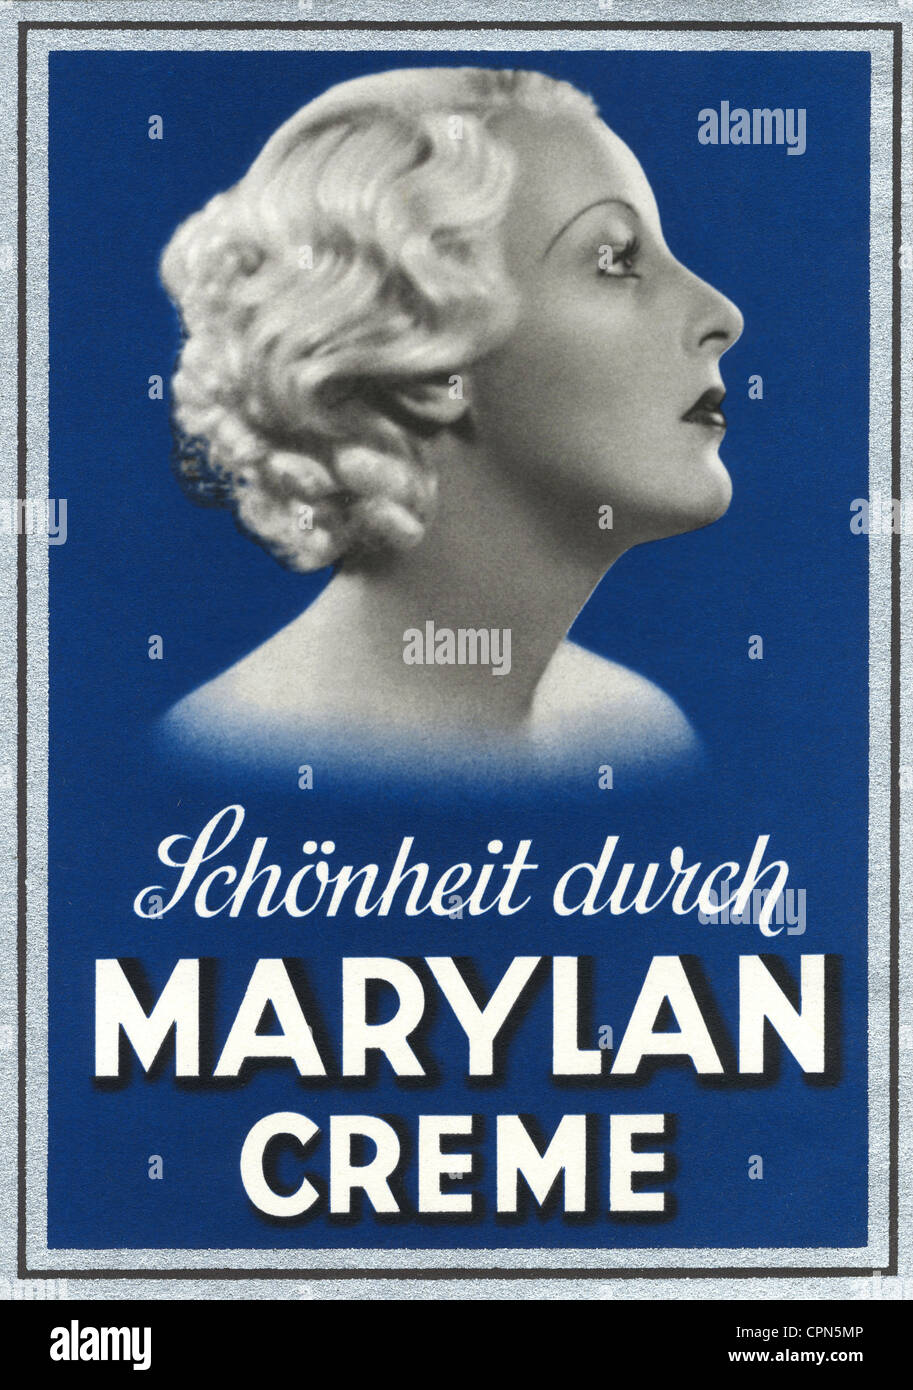 Publicité, cosmétiques, 'Schoenheit durch Marylan crème', réalisé par: Marylan distribution à Berlin, Allemagne, vers 1929, droits additionnels-Clearences-non disponible Banque D'Images